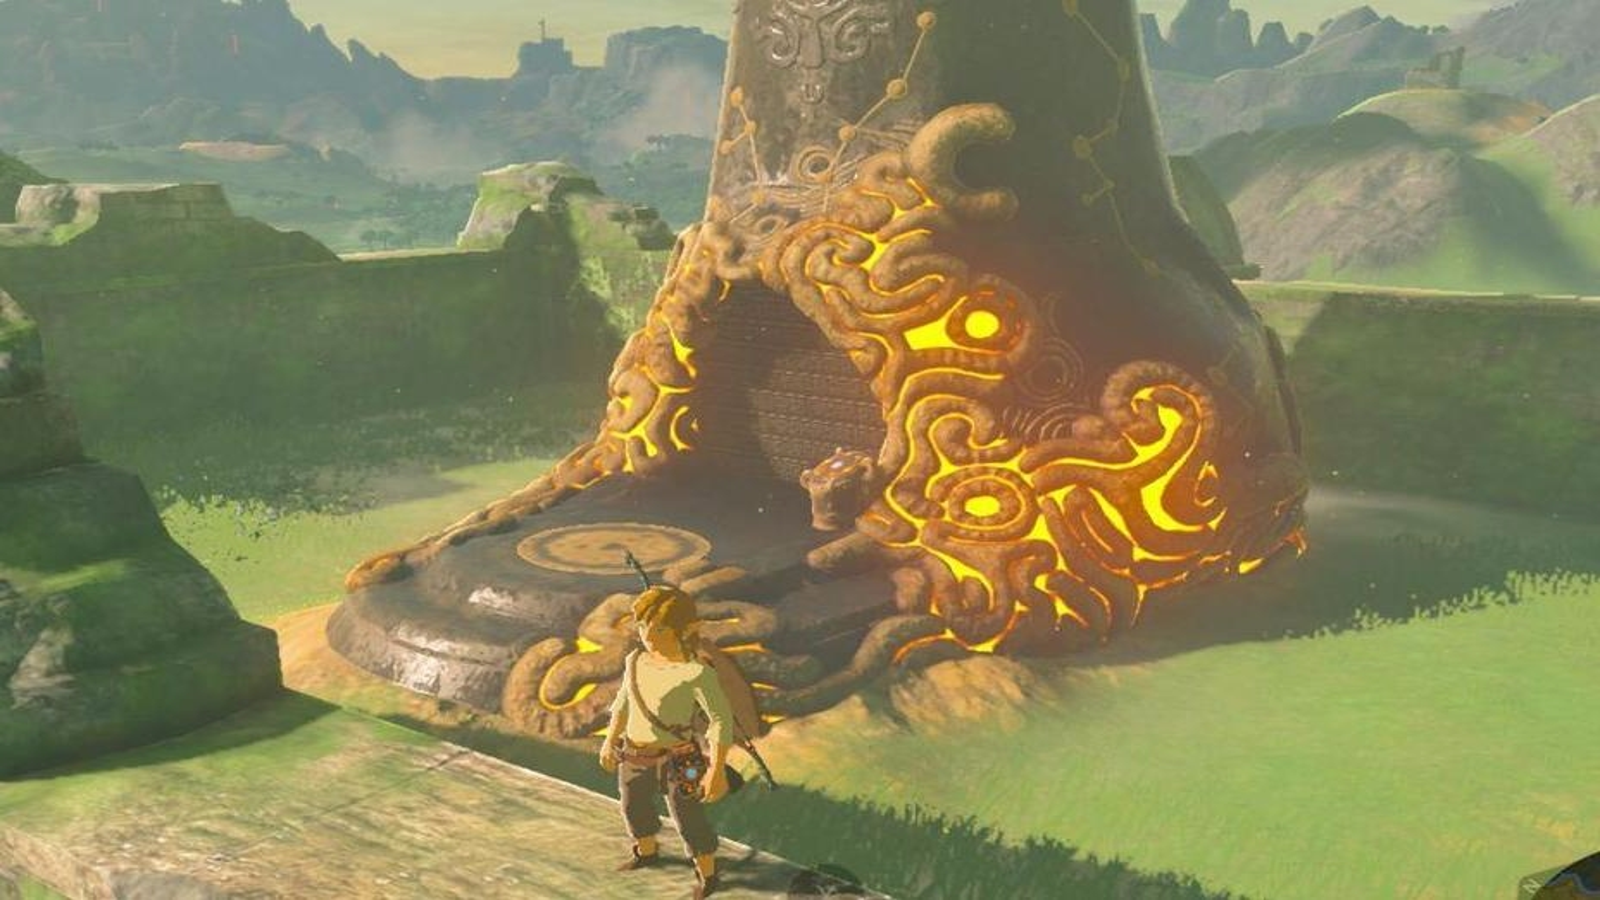 Legend of Zelda Breath of the Wild Walkthrough Part 1 - Link's